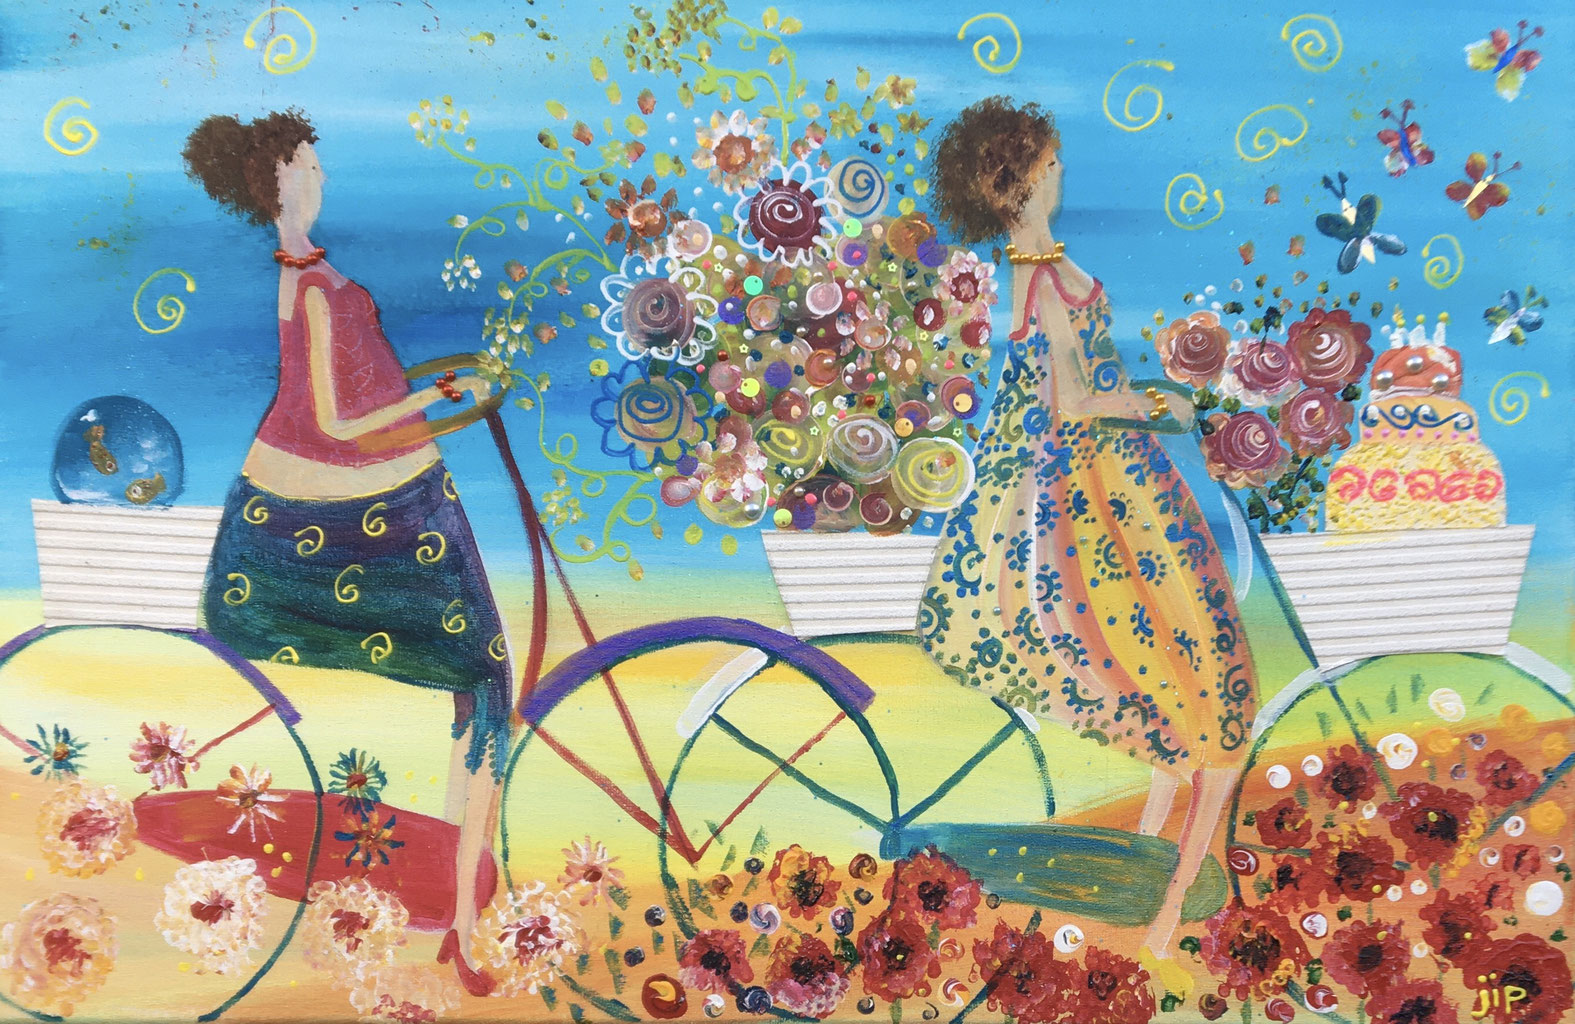 Nieuw dames op de fiets jips-art - jips-art vrolijke schilderijen JT-73